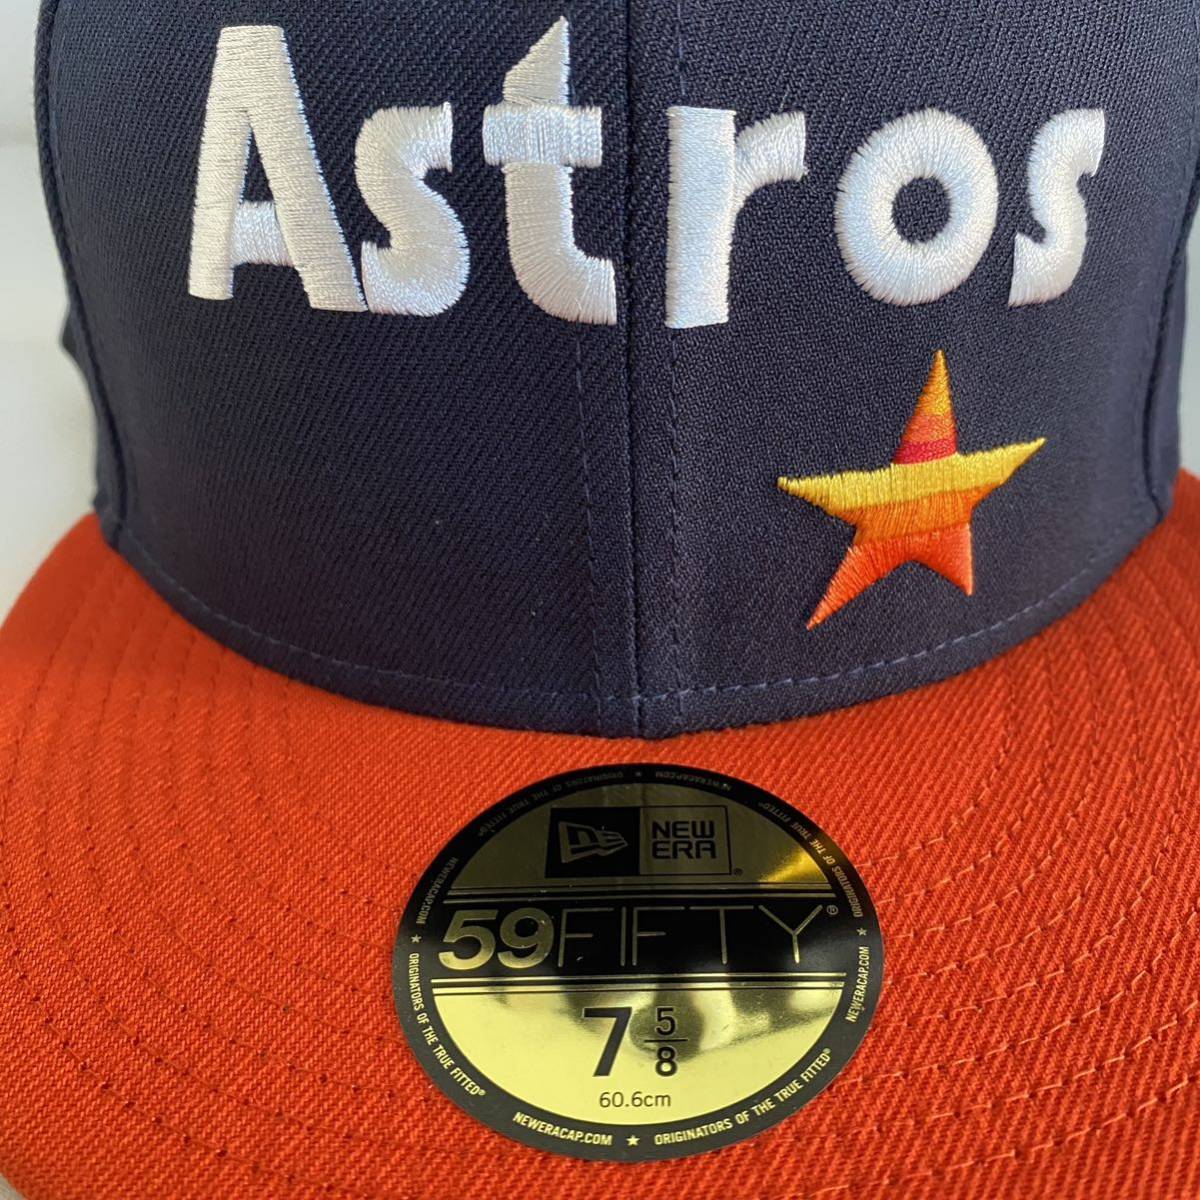 新品 New Era ツバ裏グリーン Houston Astros Retro Jersey Script Cap Navy Orange 7 5/8  60.6 ニューエラ アストロズ キャップ ネイビー